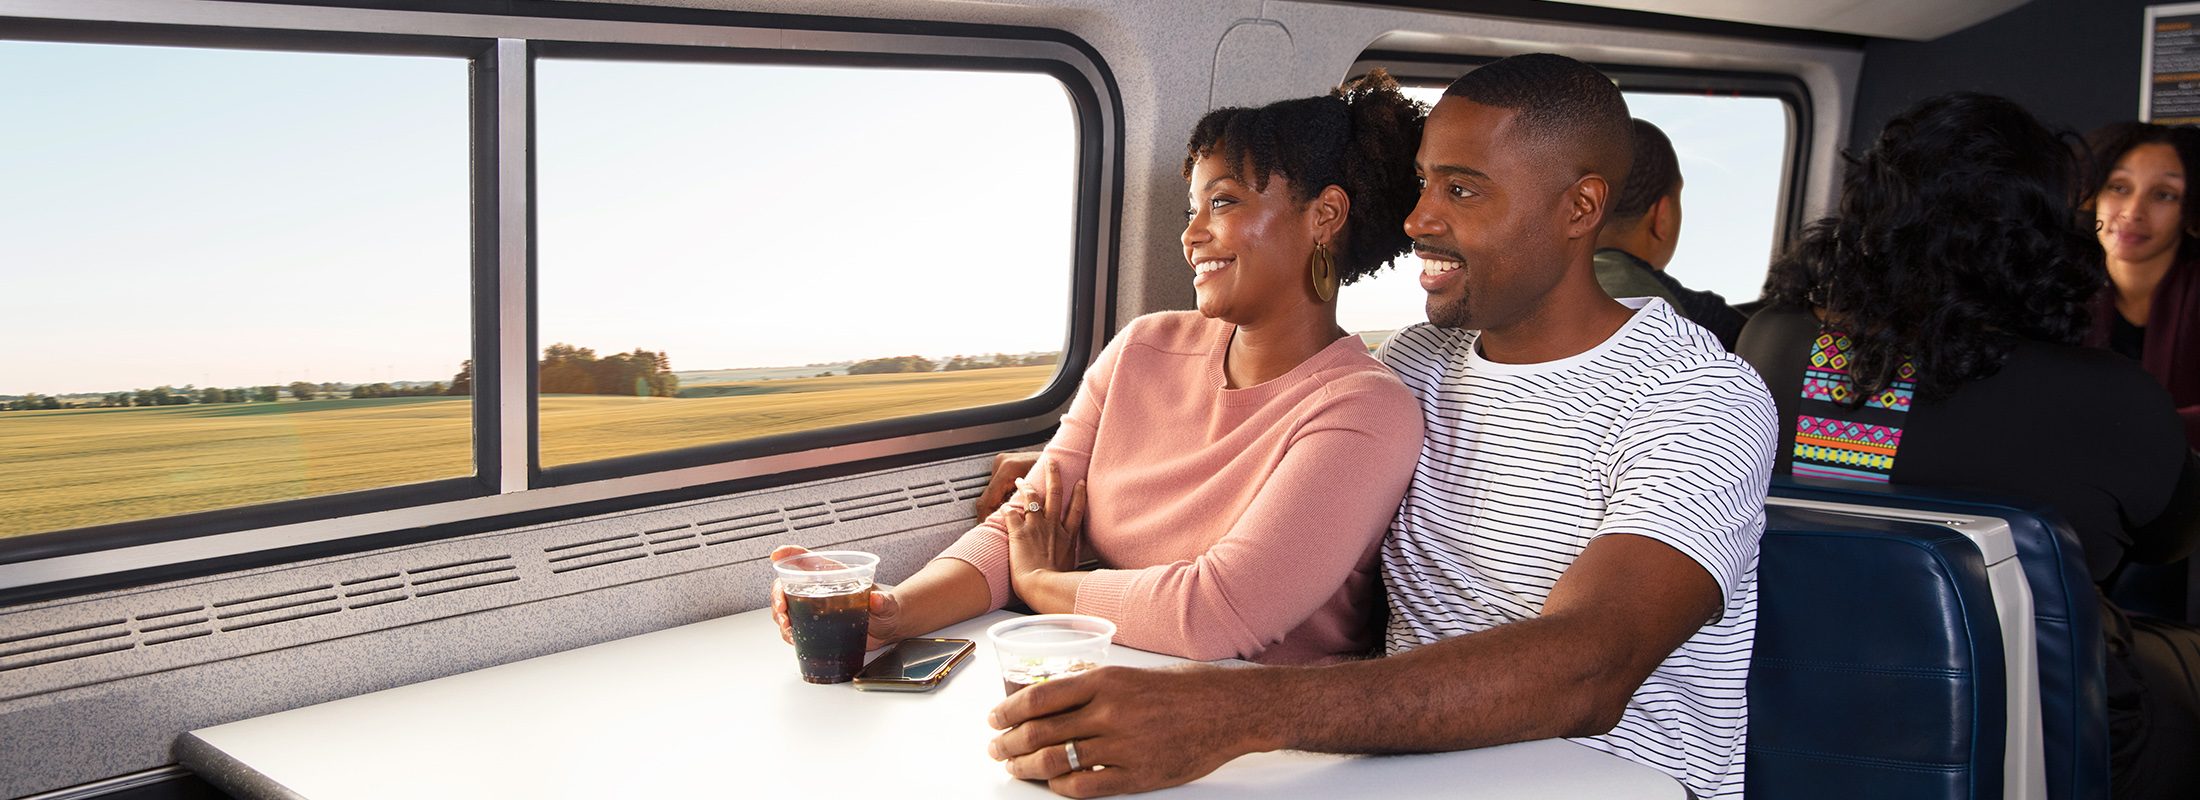 Un couple à bord du train regardant le paysage défiler tout en savourant des rafraîchissements